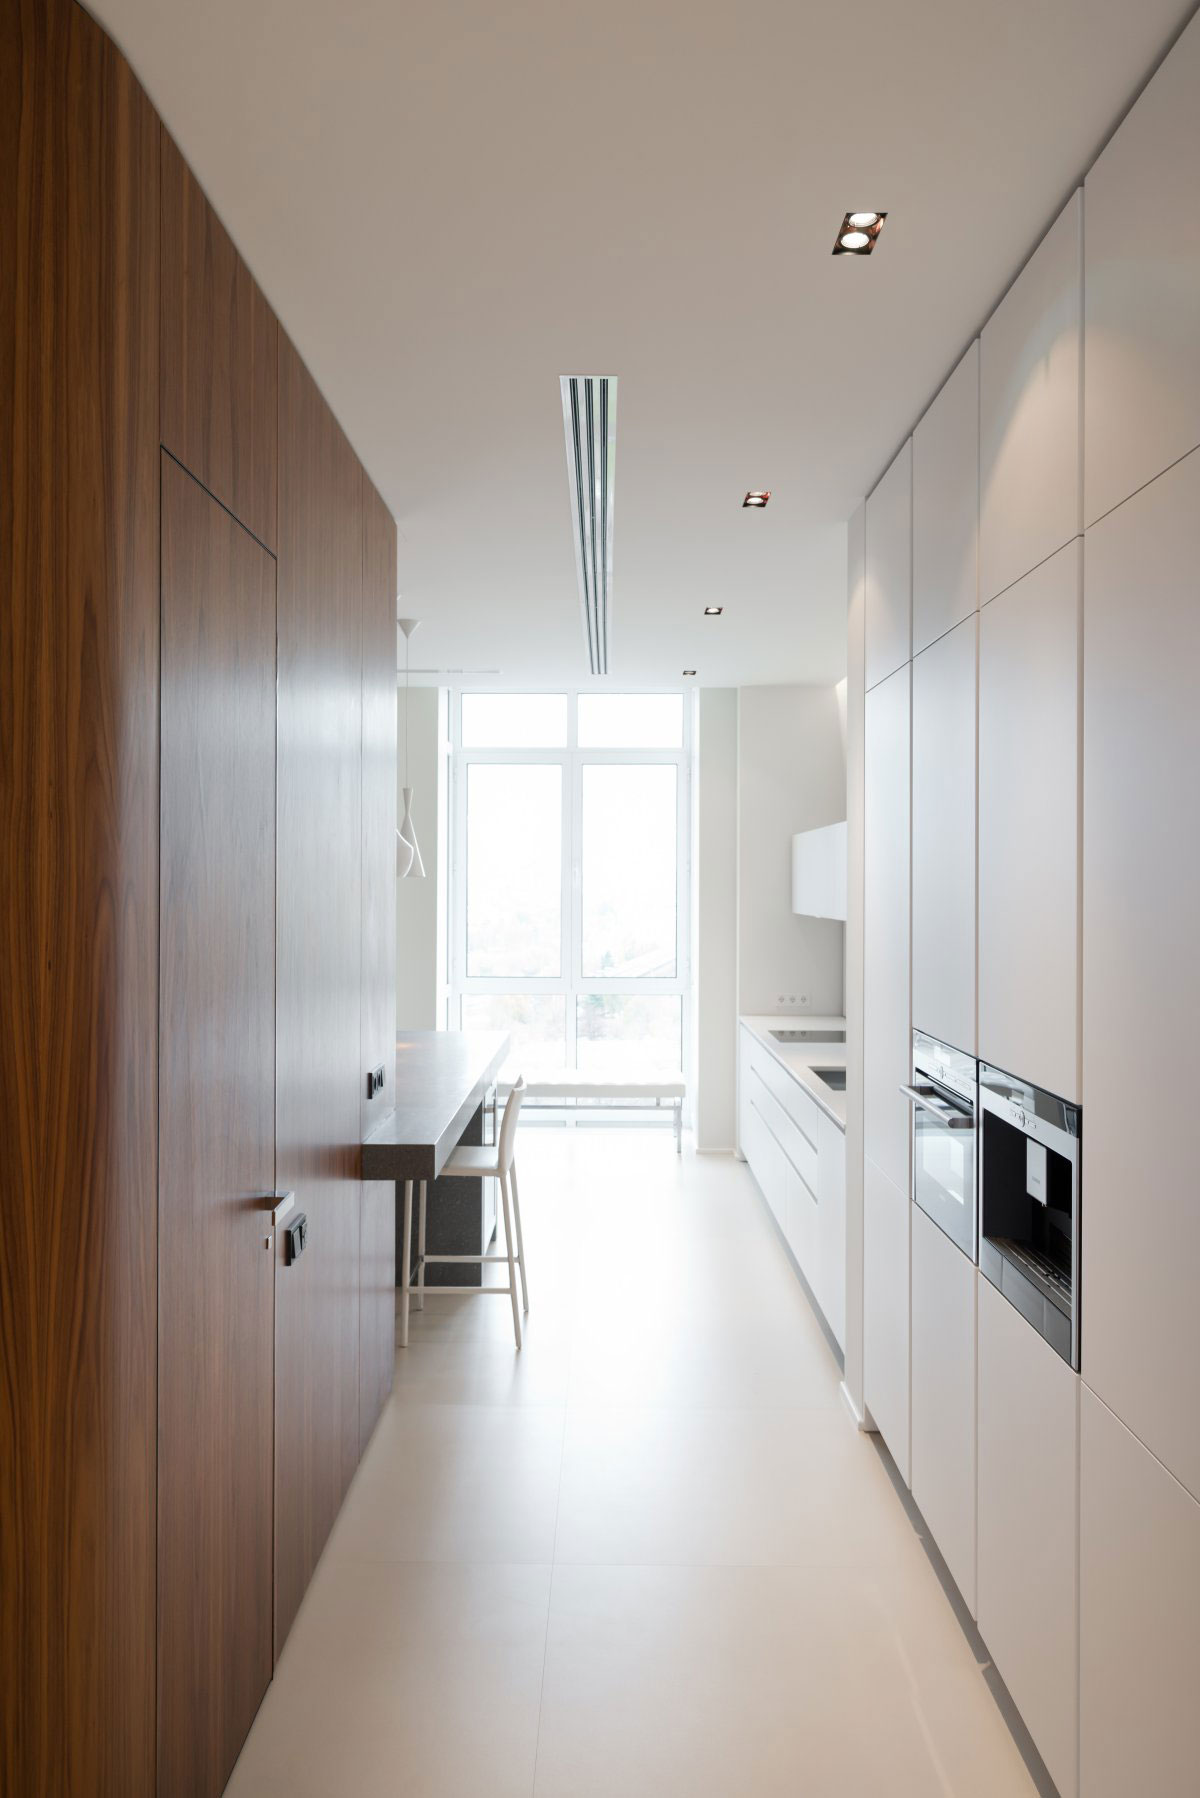 Дизайн интерьера кухни остиной в квартире от SL*Project